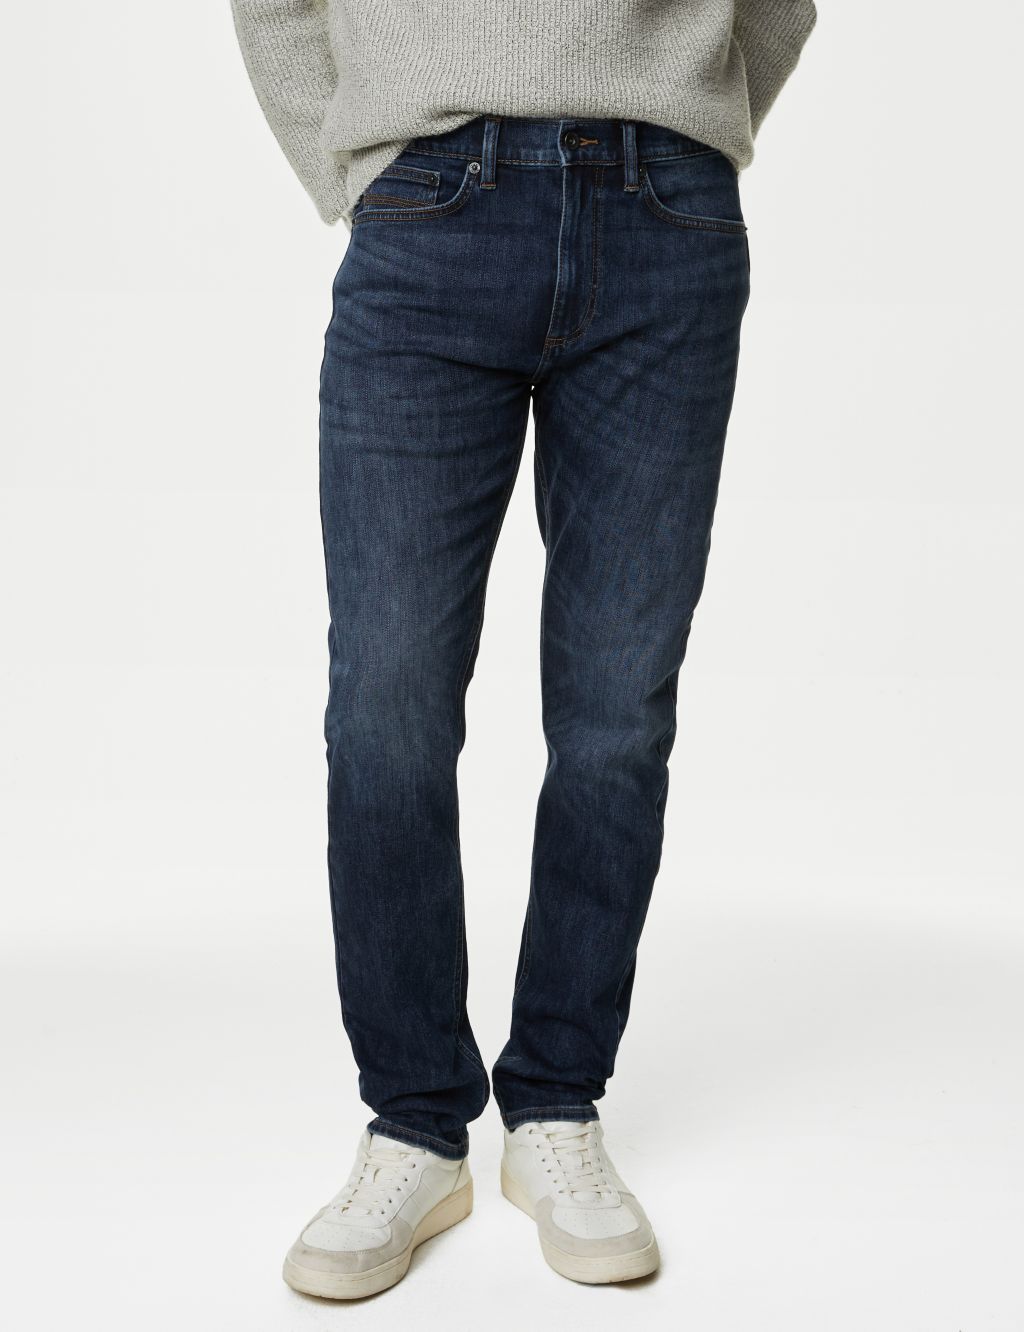 Men's Blue Jeans | M&S